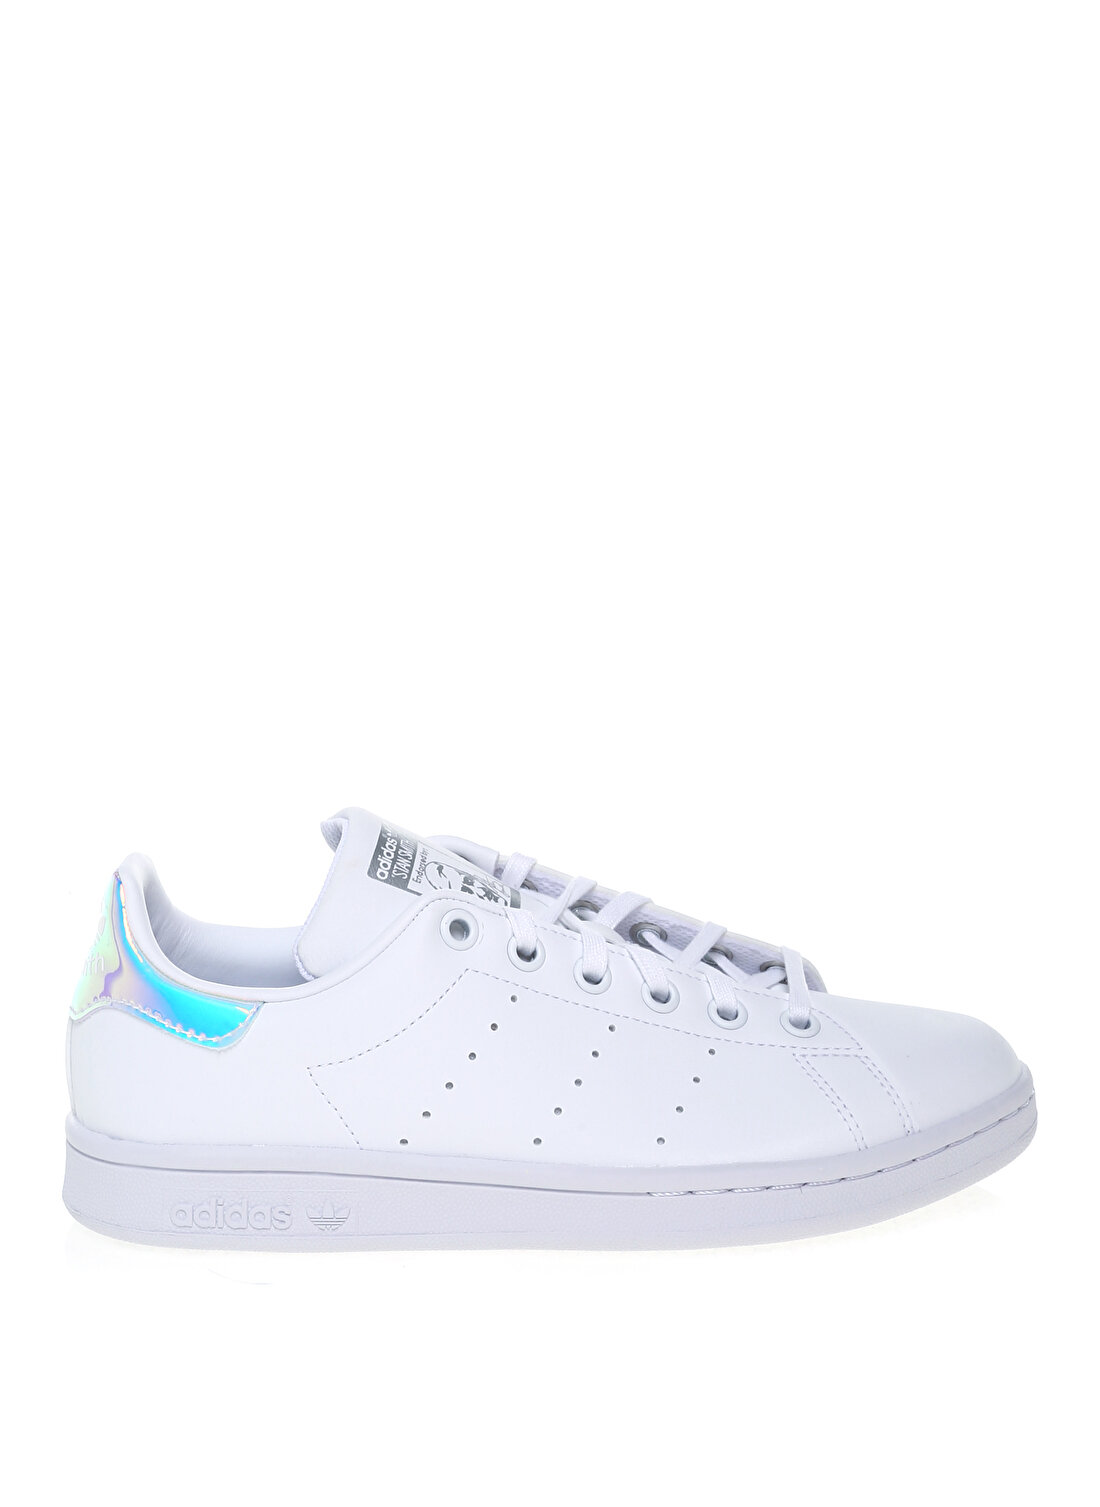 adidas Beyaz - Gümüş Kız Çocuk Yürüyüş Ayakkabısı FX7521 STAN SMITH J 